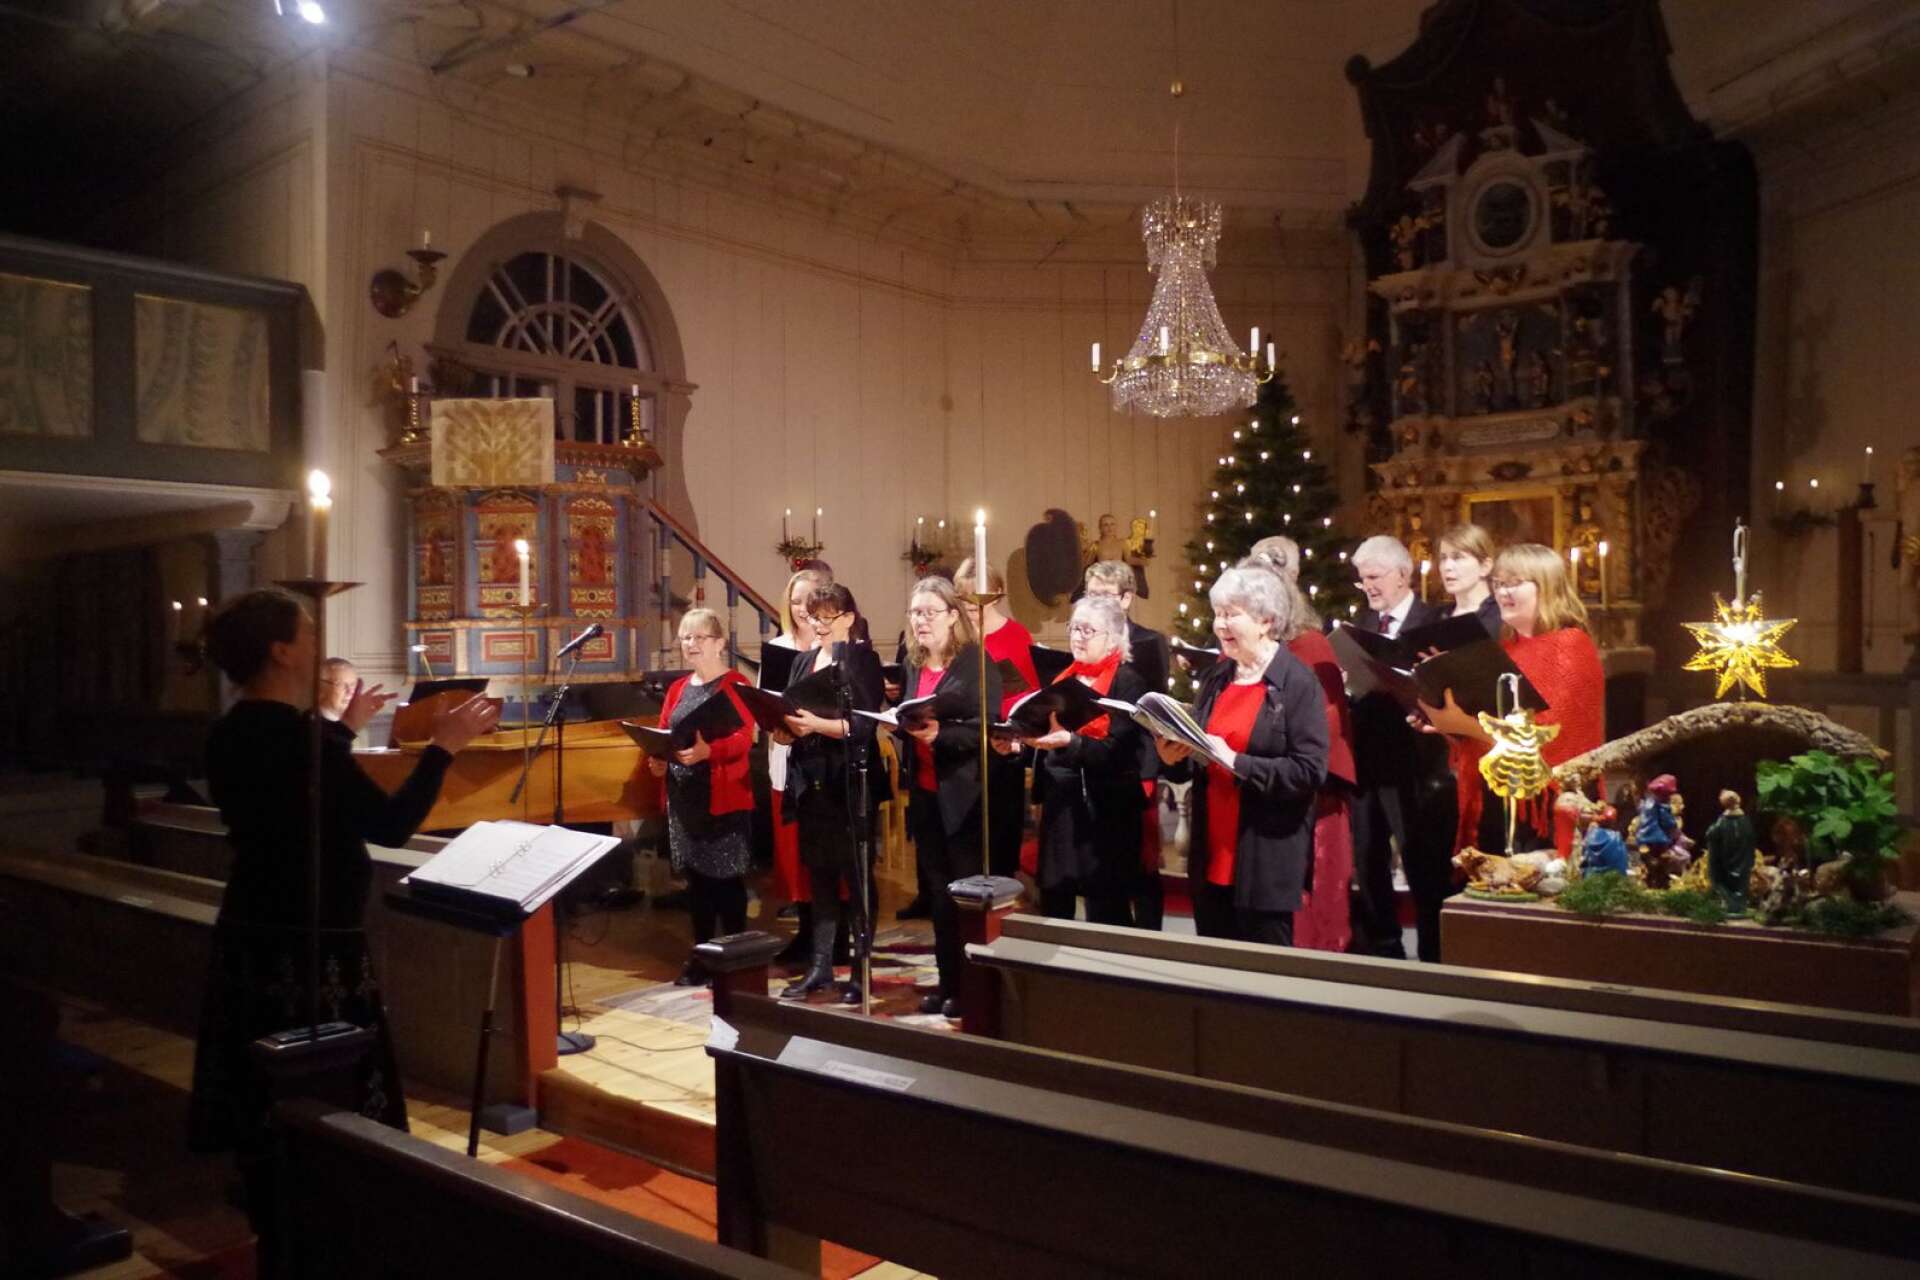 Långseruds kyrkokör under ledning av Catharina Algesten bjöd på en värmande julkonsert när vind och snö yrde utanför kyrkan.